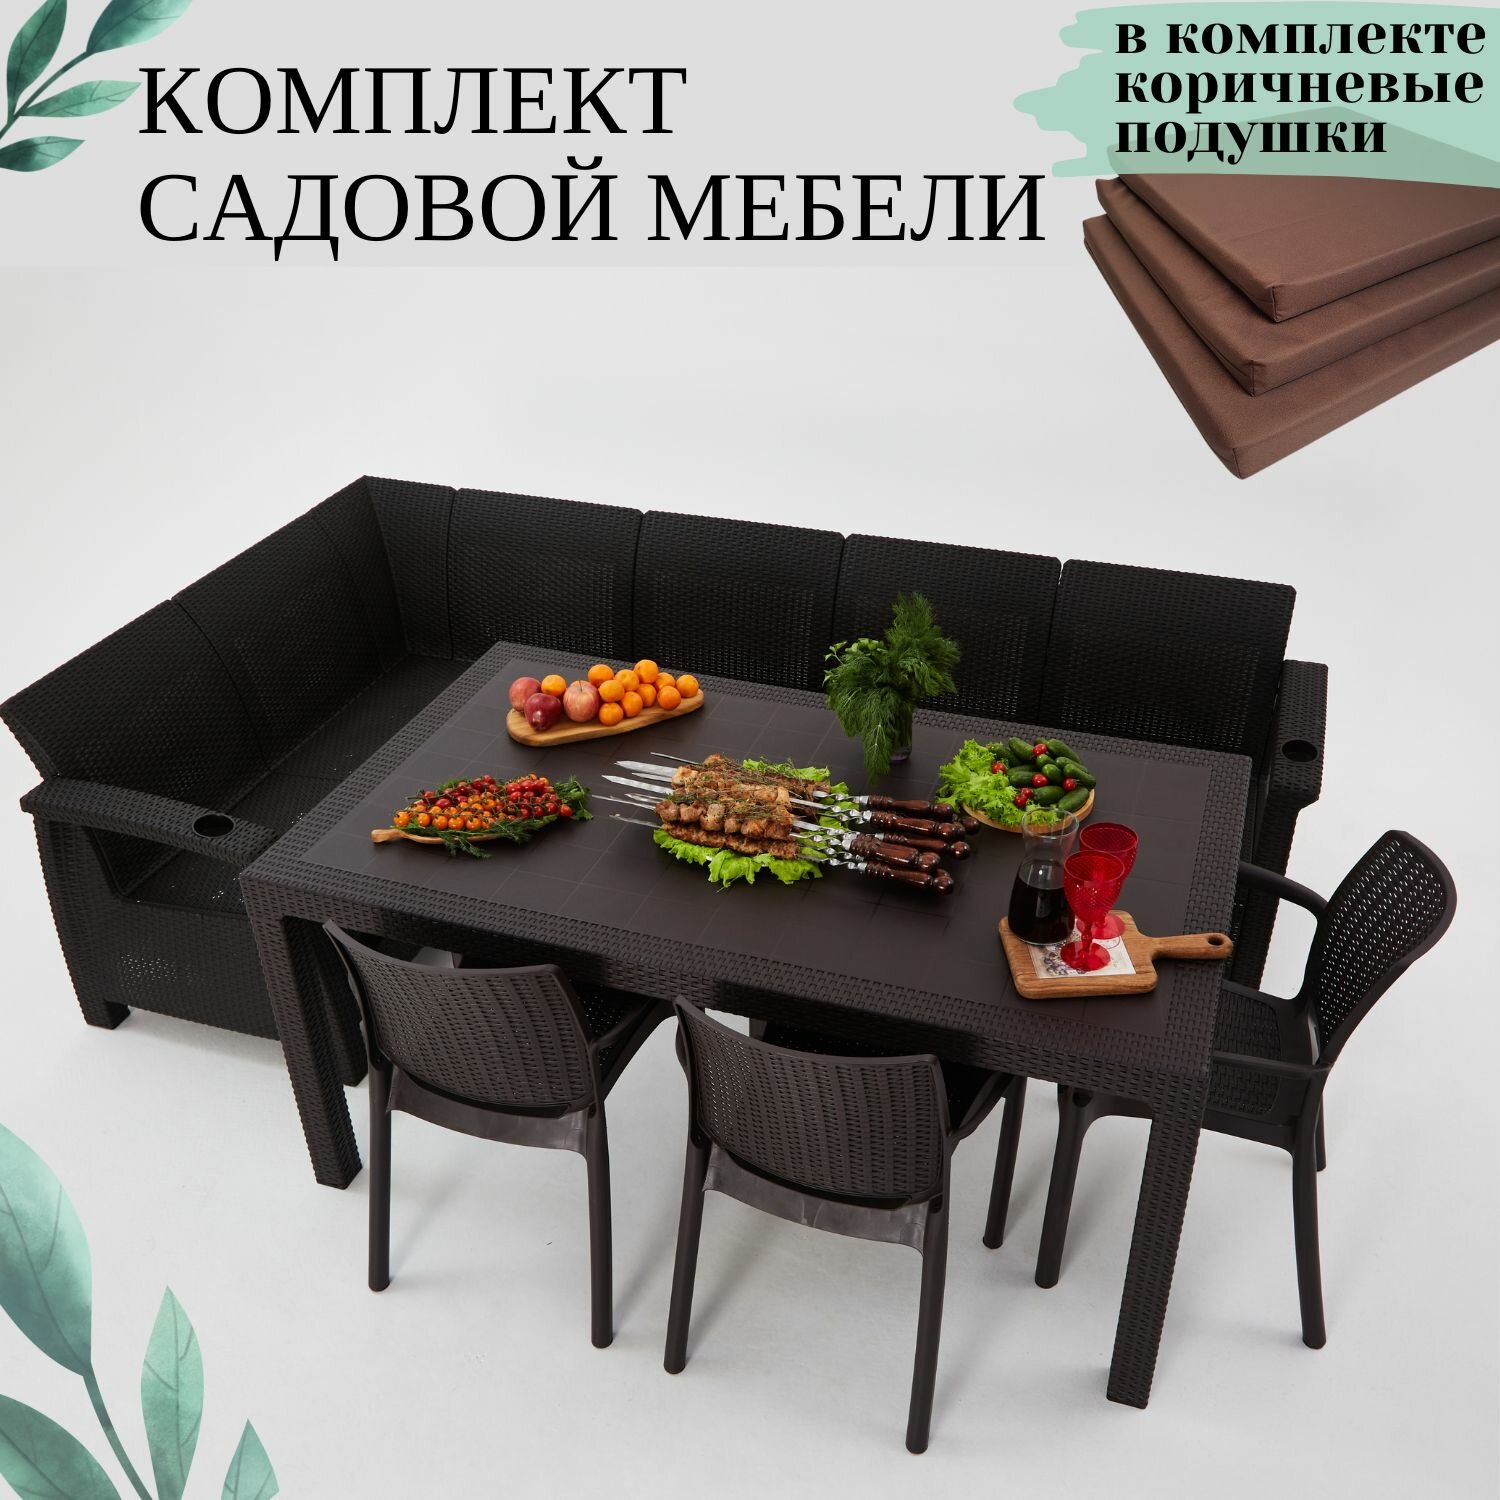 Комплект садовой мебели из ротанга Set 5+Bt+3ch коричневые подушки